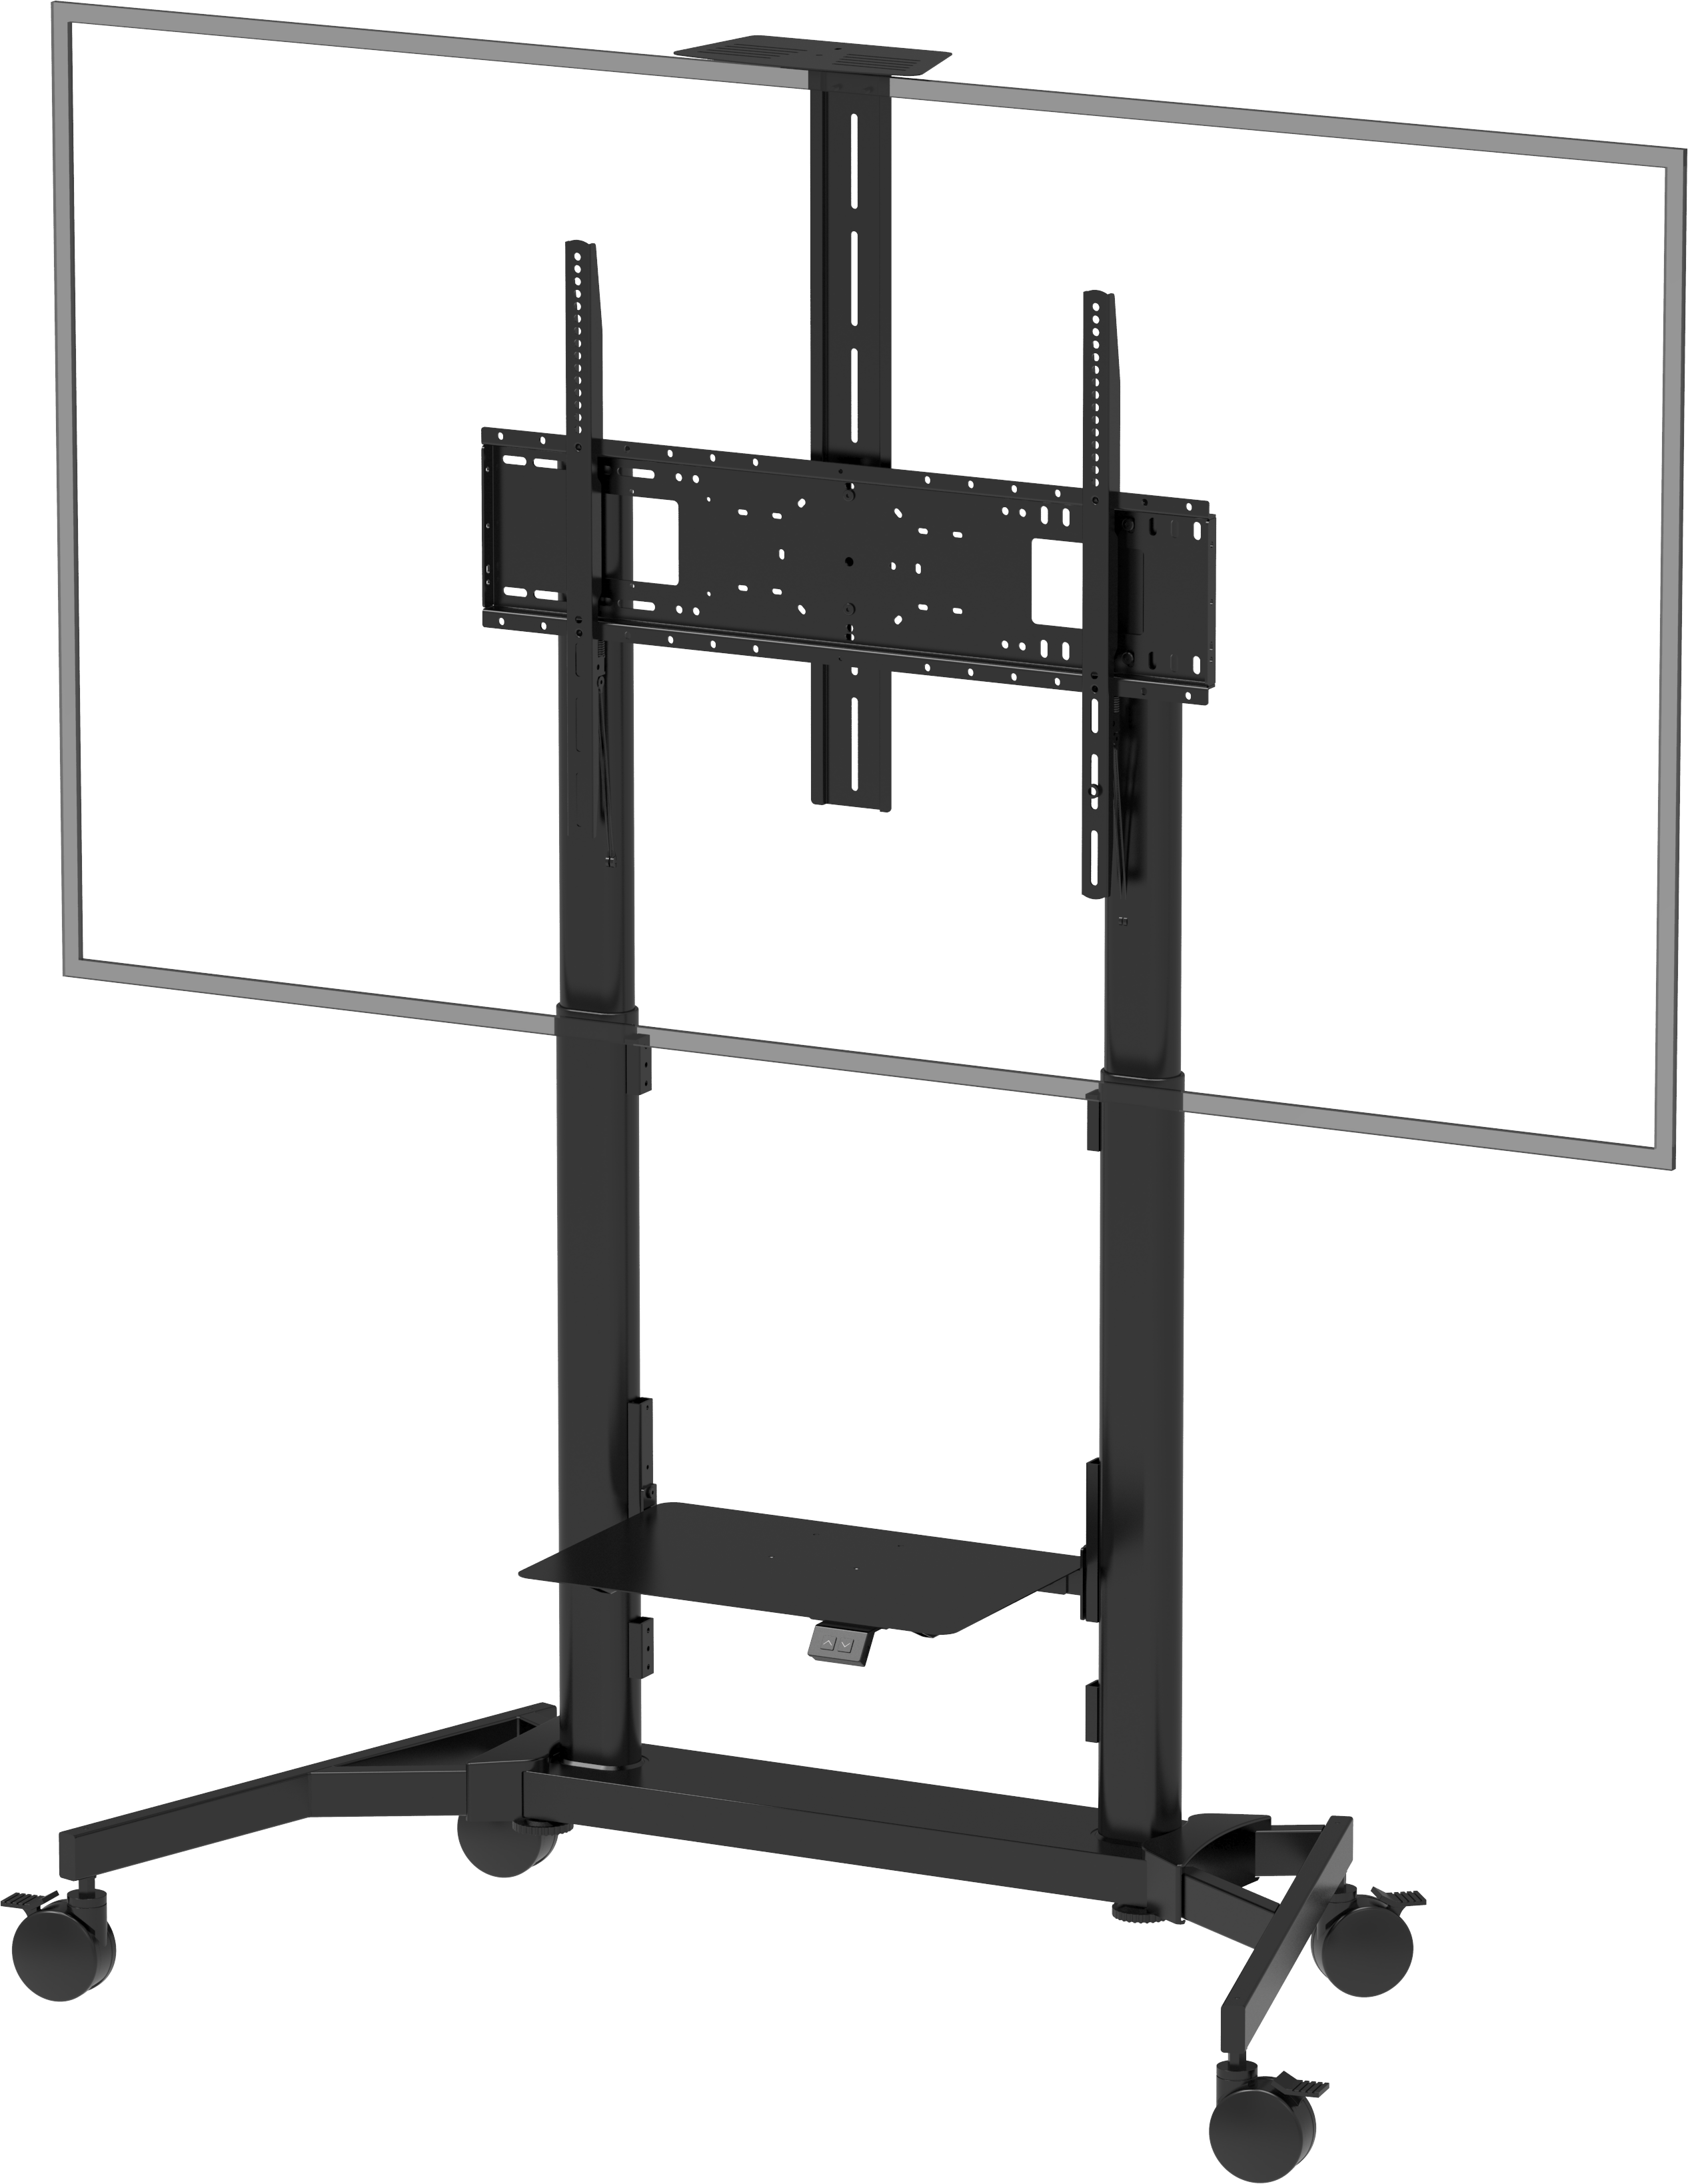 An image showing Carrello motorizzato per schermi regolabile in altezza con portata di 80 kg